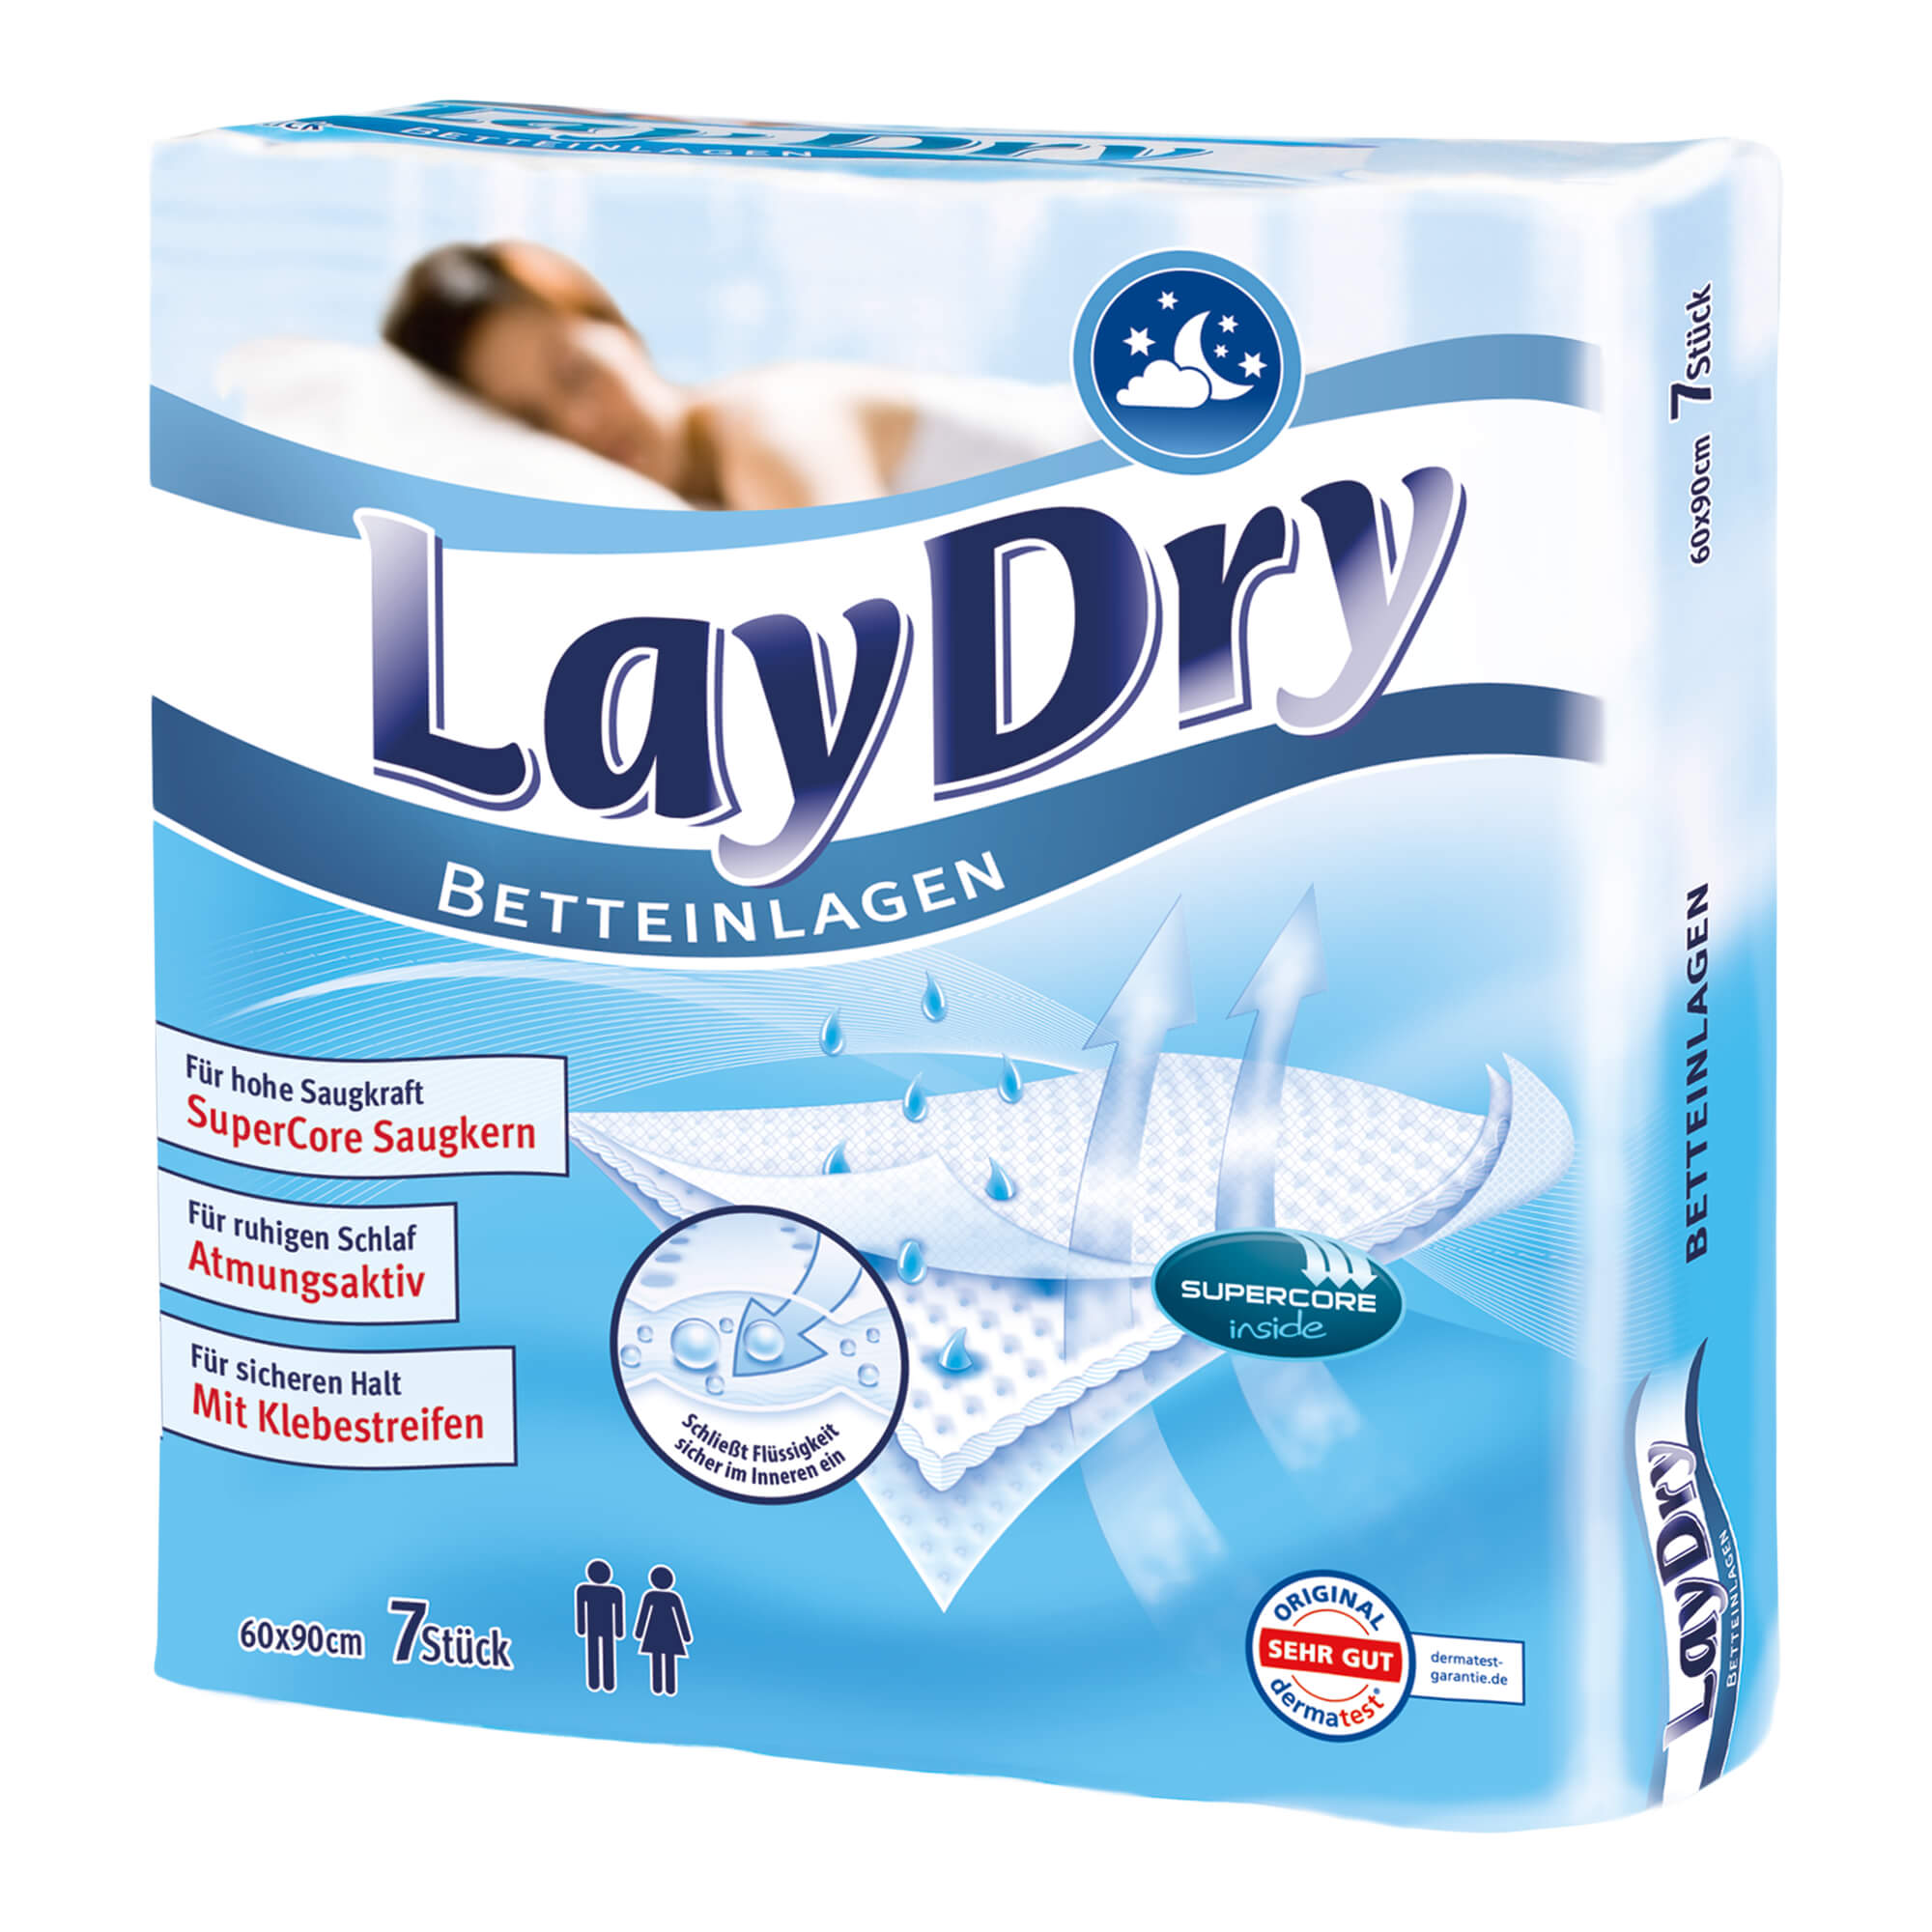 Latexfreie LayDry-Pflegeunterlage und Betteinlage gibt ein gutes Stück Lebensqualität zurück.